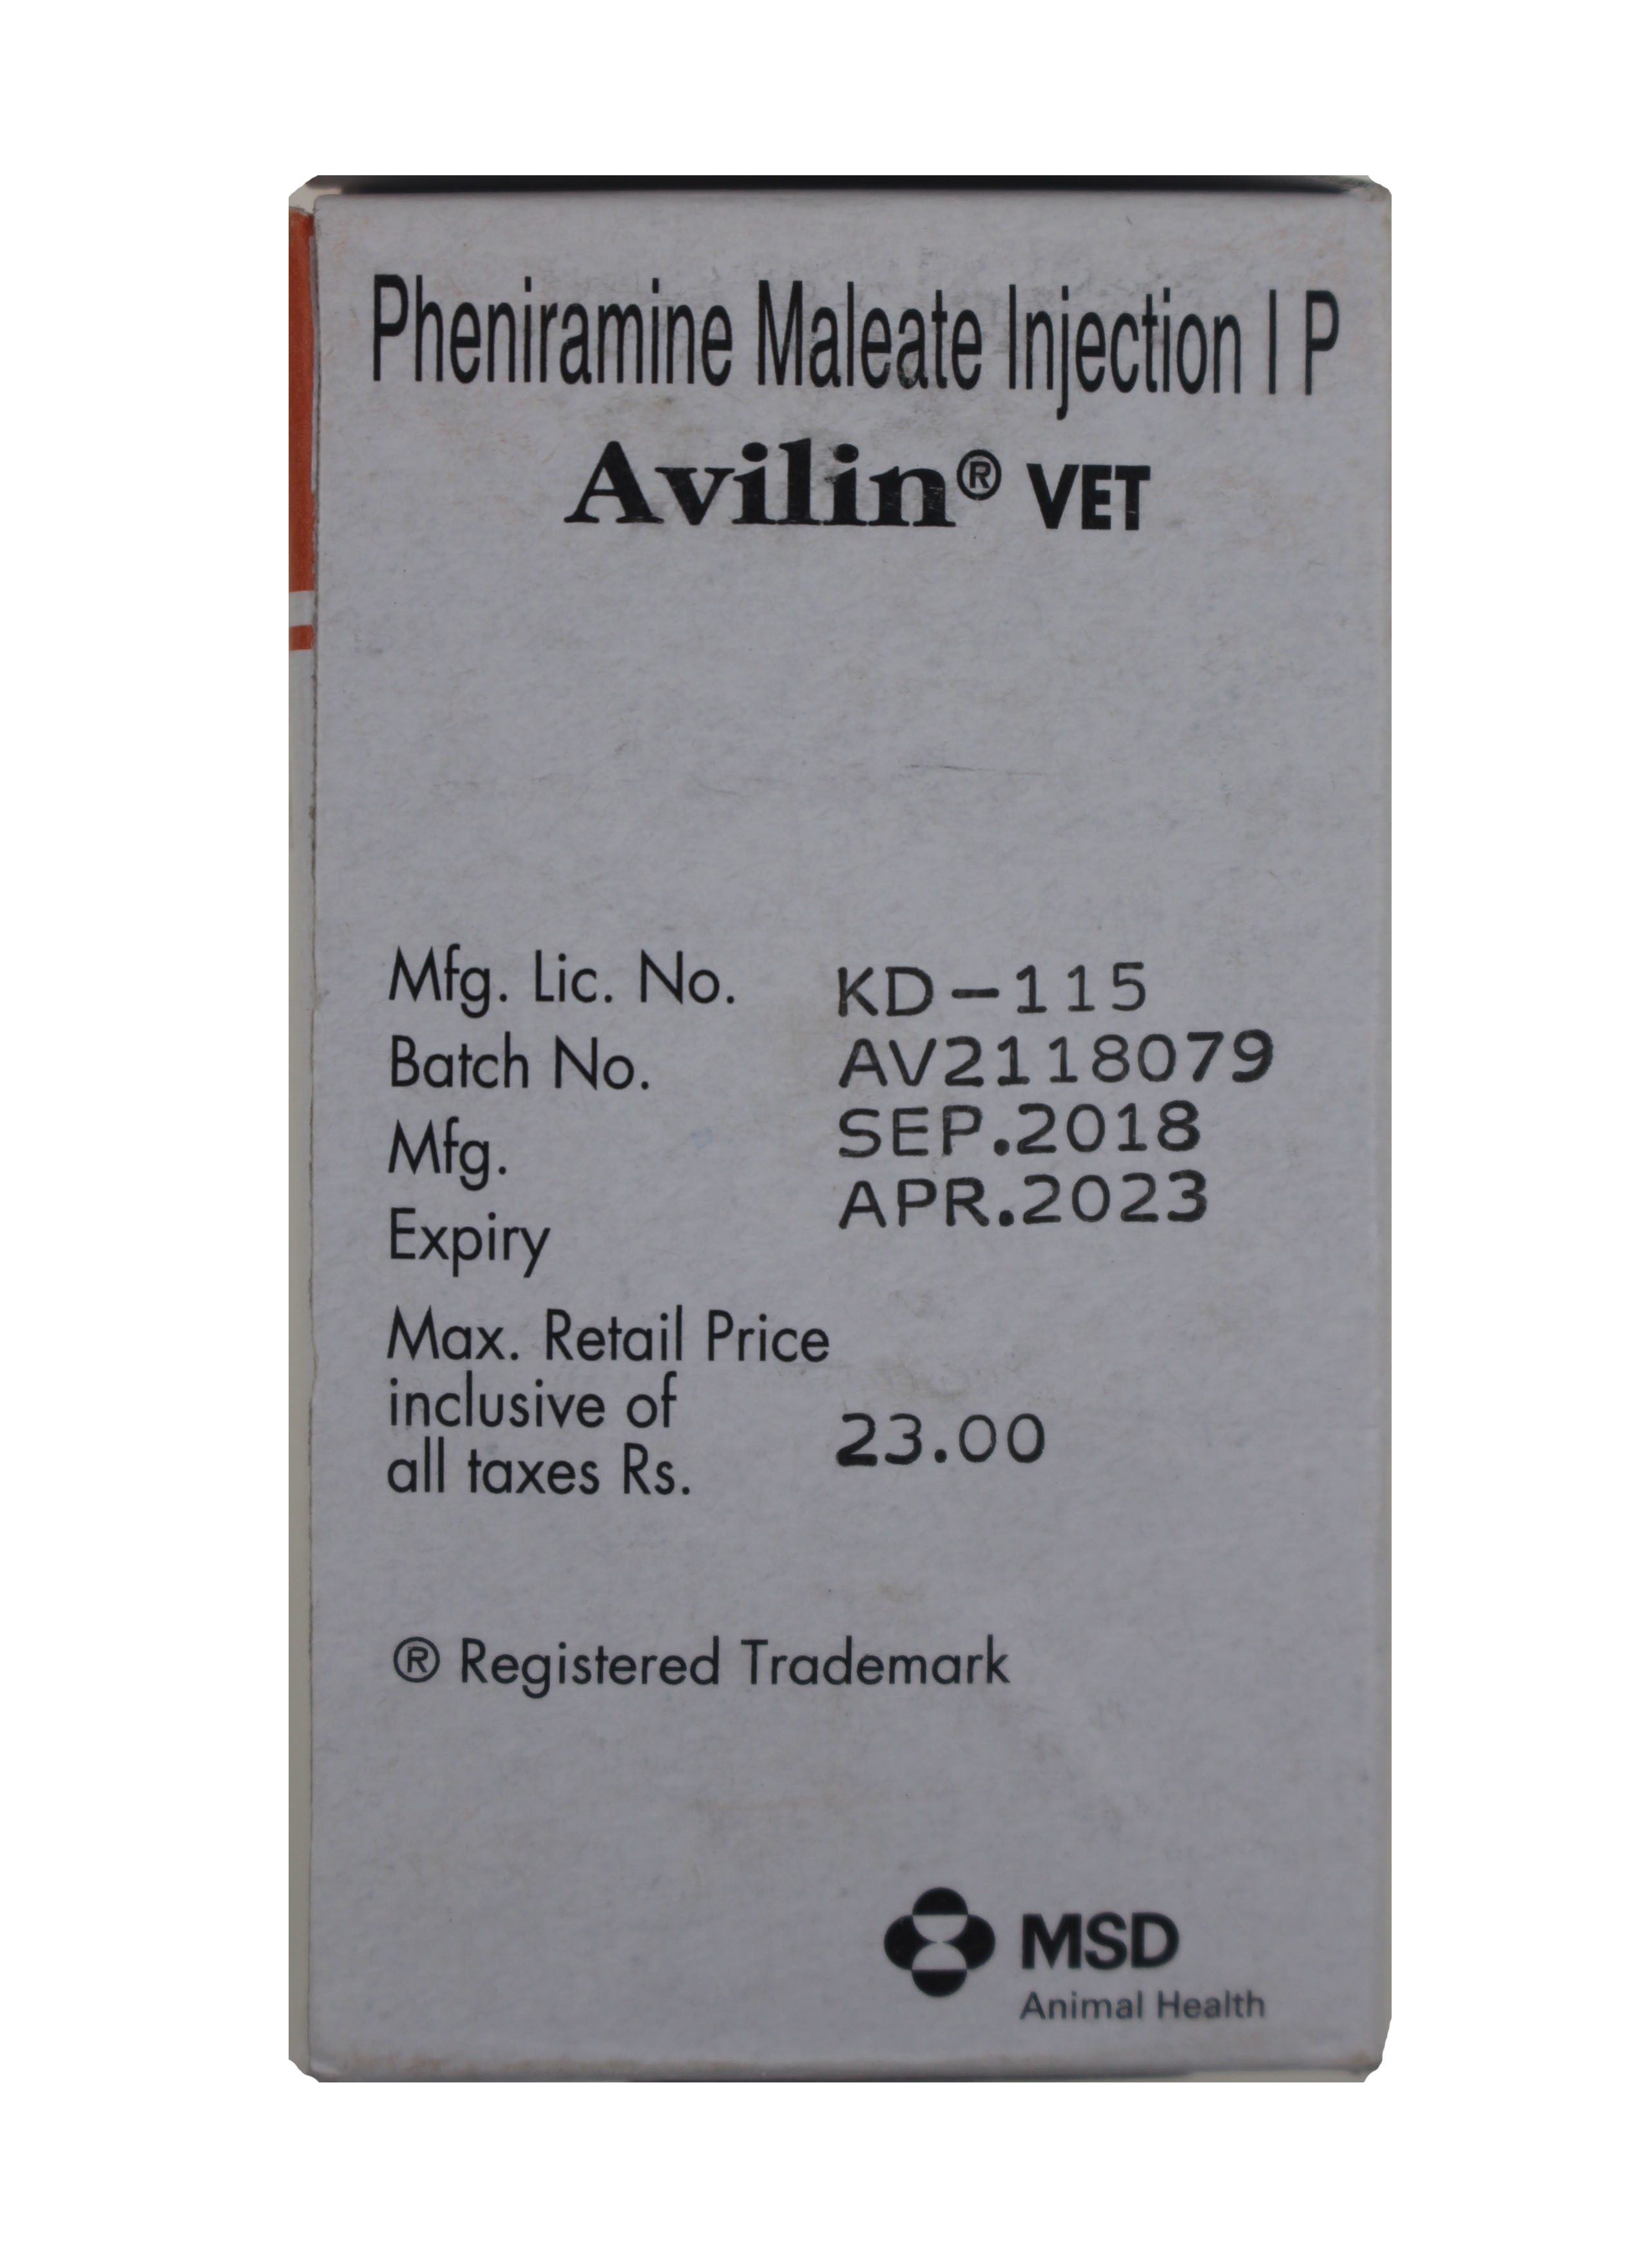 Avilin Vet 33ml Injection Pheniramine Maleate